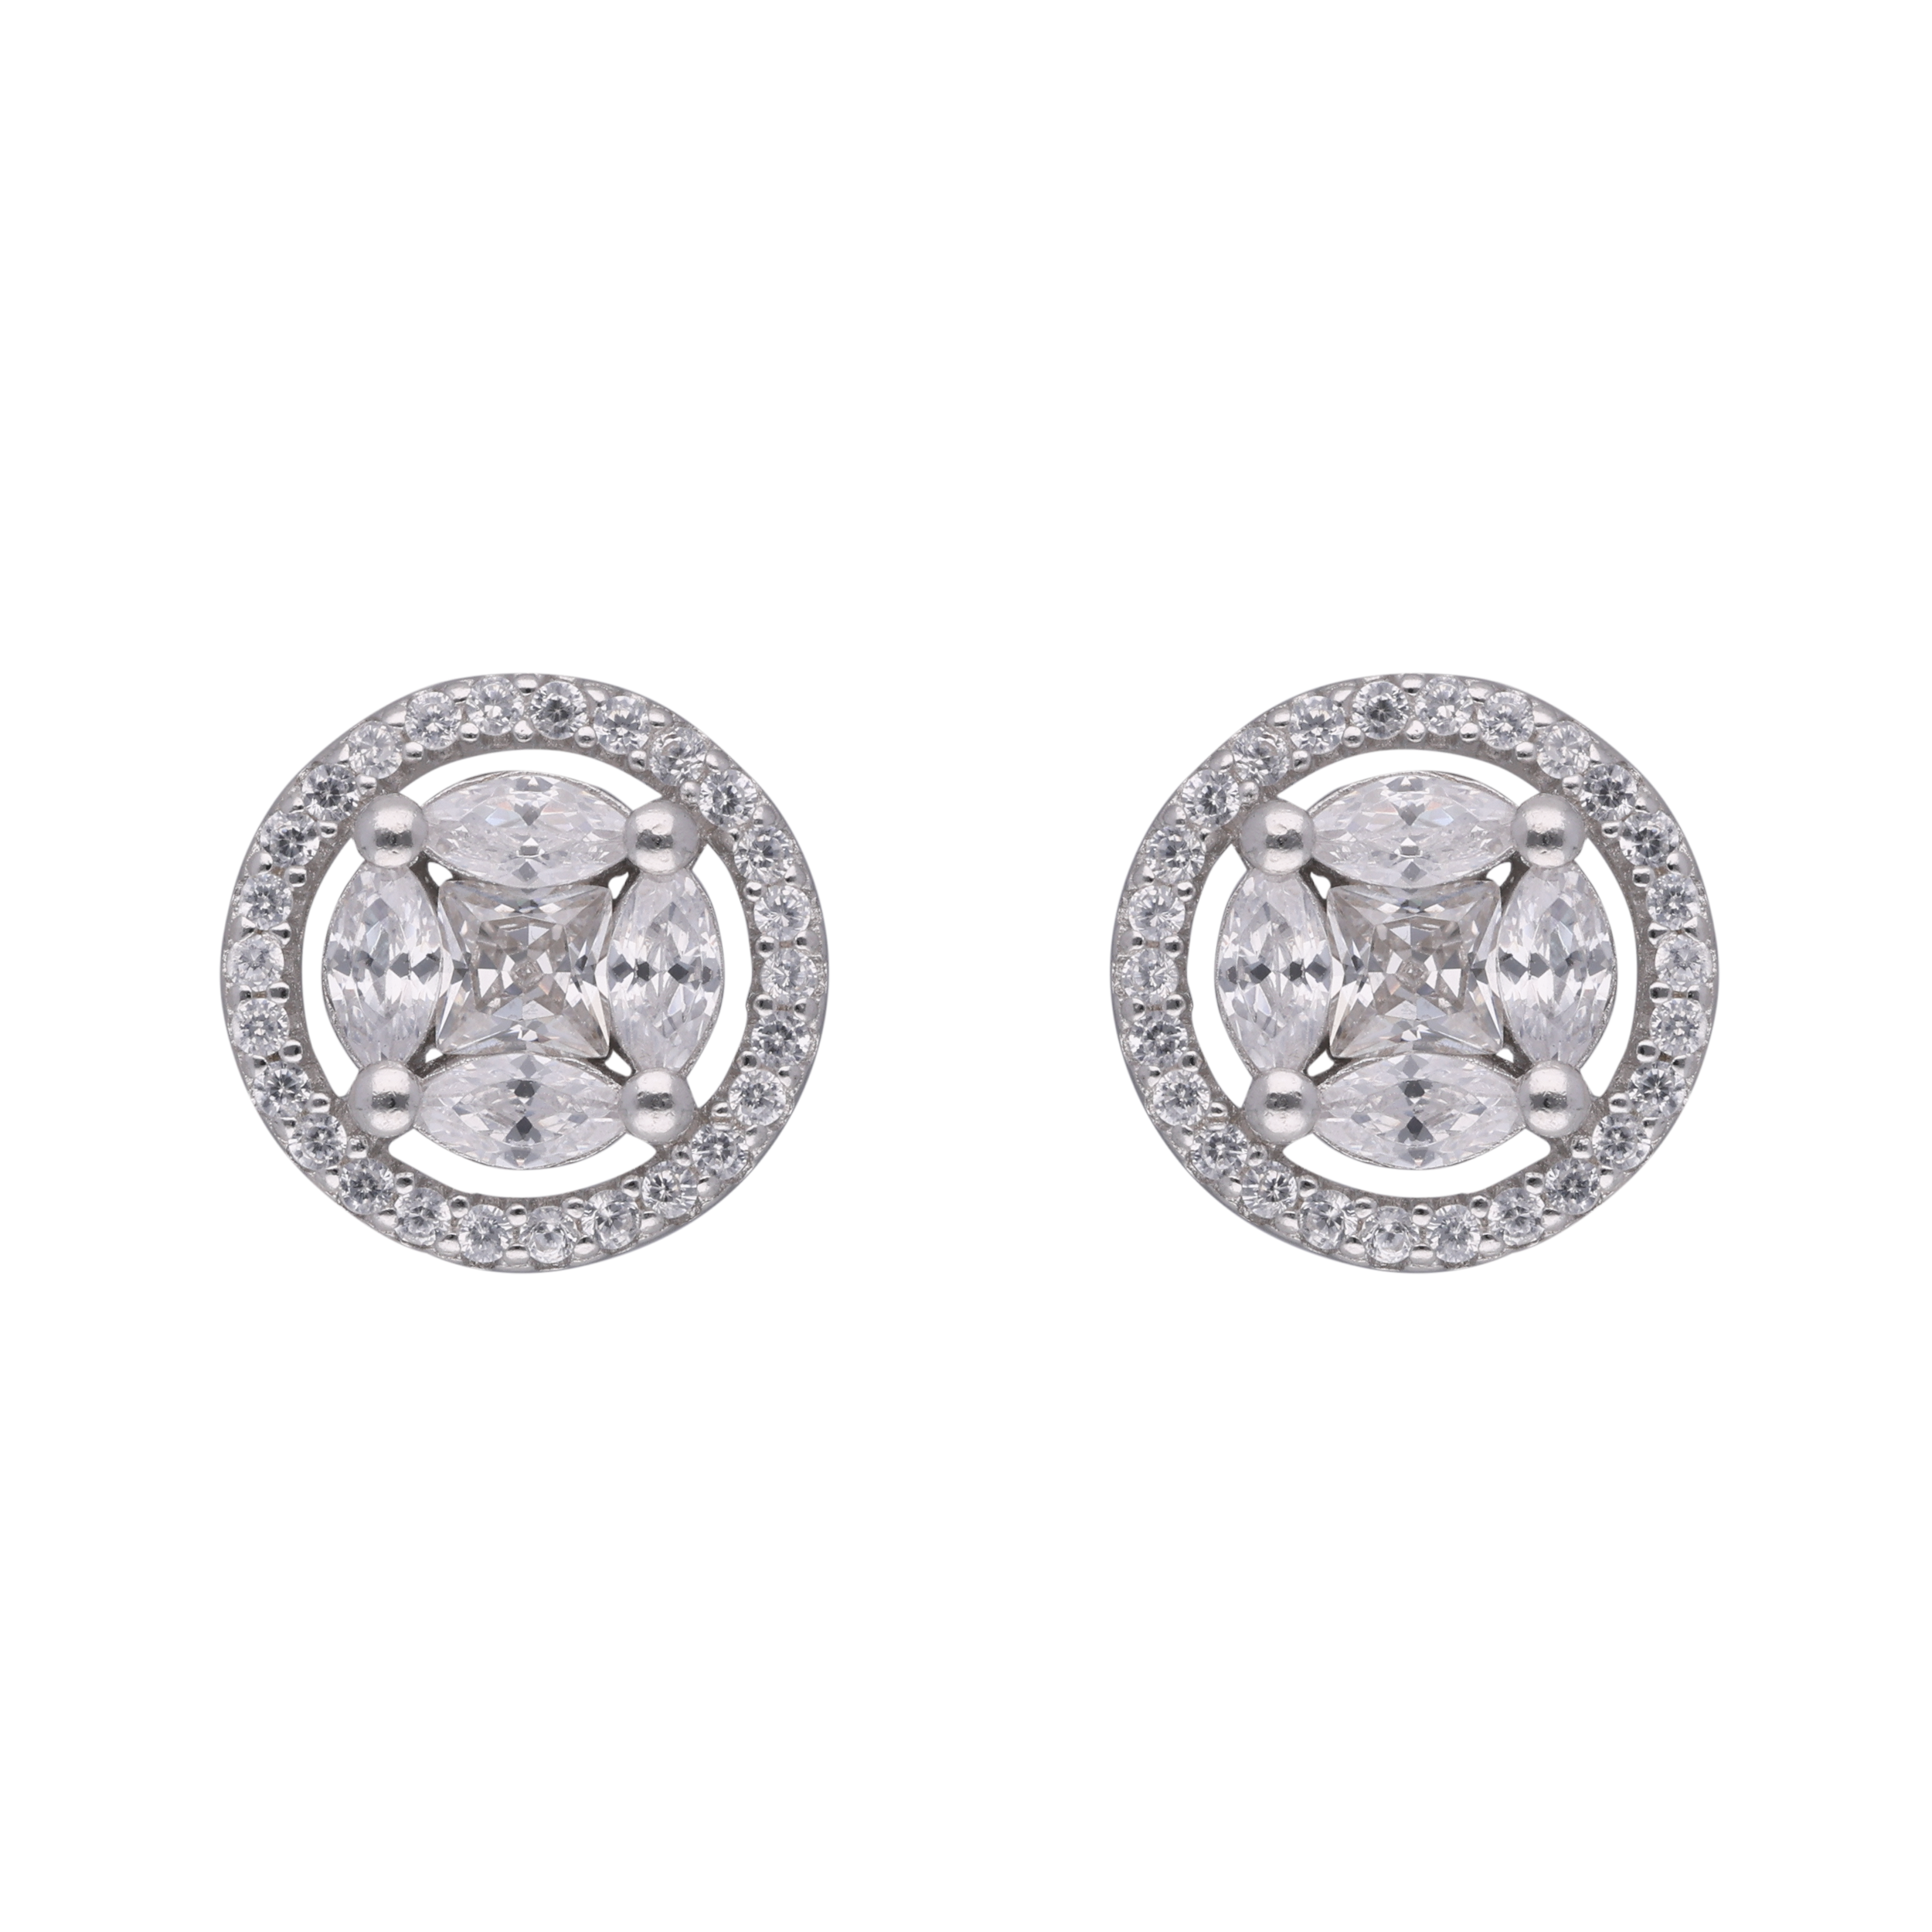 Orbital Radiance: Sterling Silver Round Stud Earrings | SKU: 0002984094, 0002983943, 0019258393, 0019258270